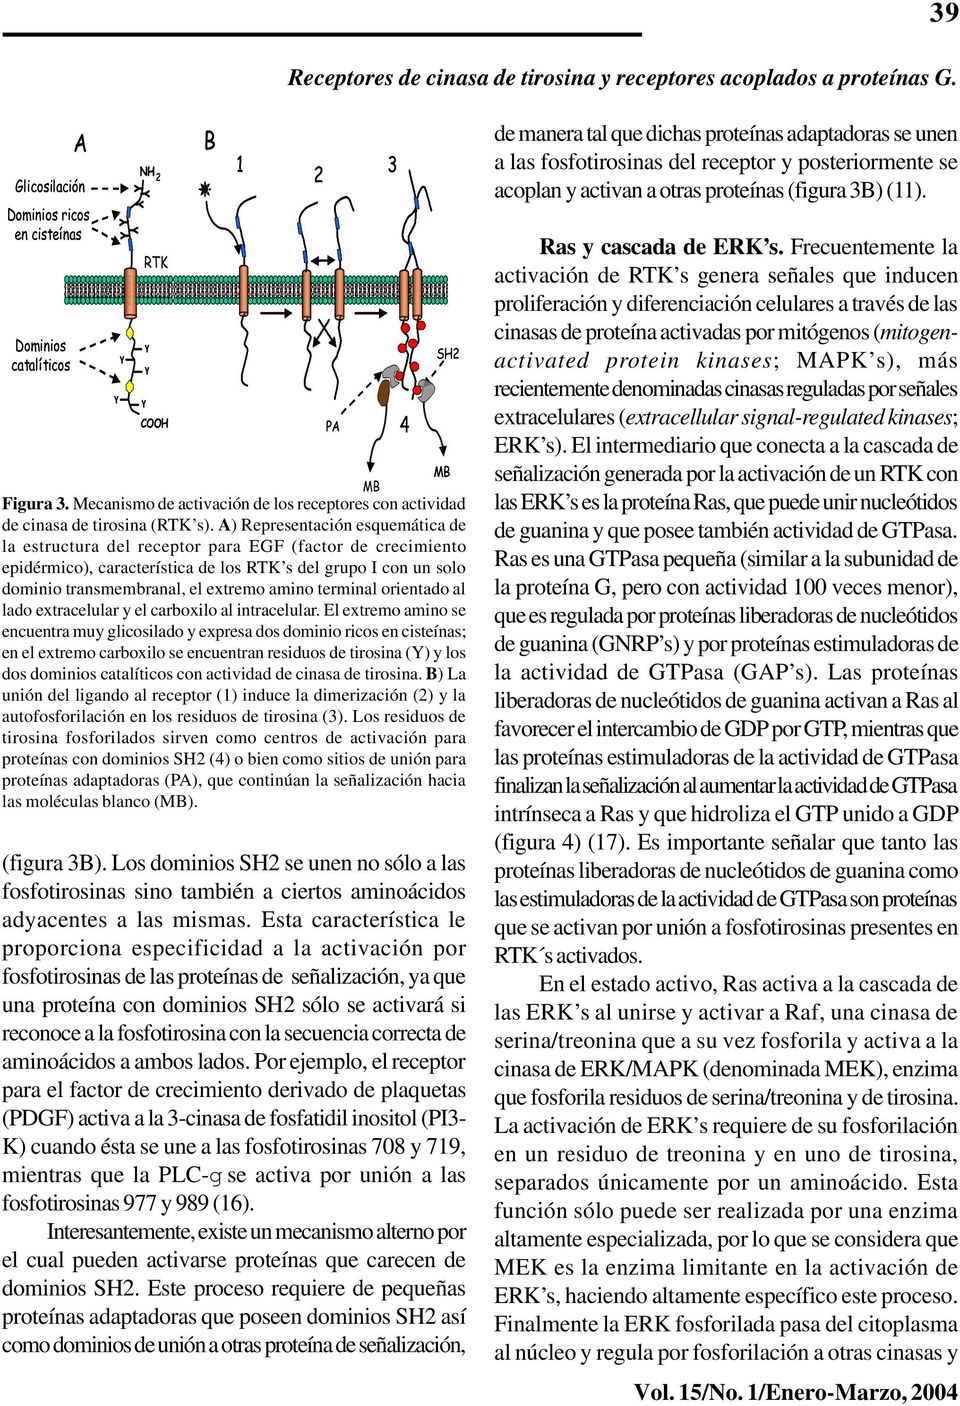 A) Representación esquemática de la estructura del receptor para EGF (factor de crecimiento epidérmico), característica de los RTK s del grupo I con un solo dominio transmembranal, el extremo amino